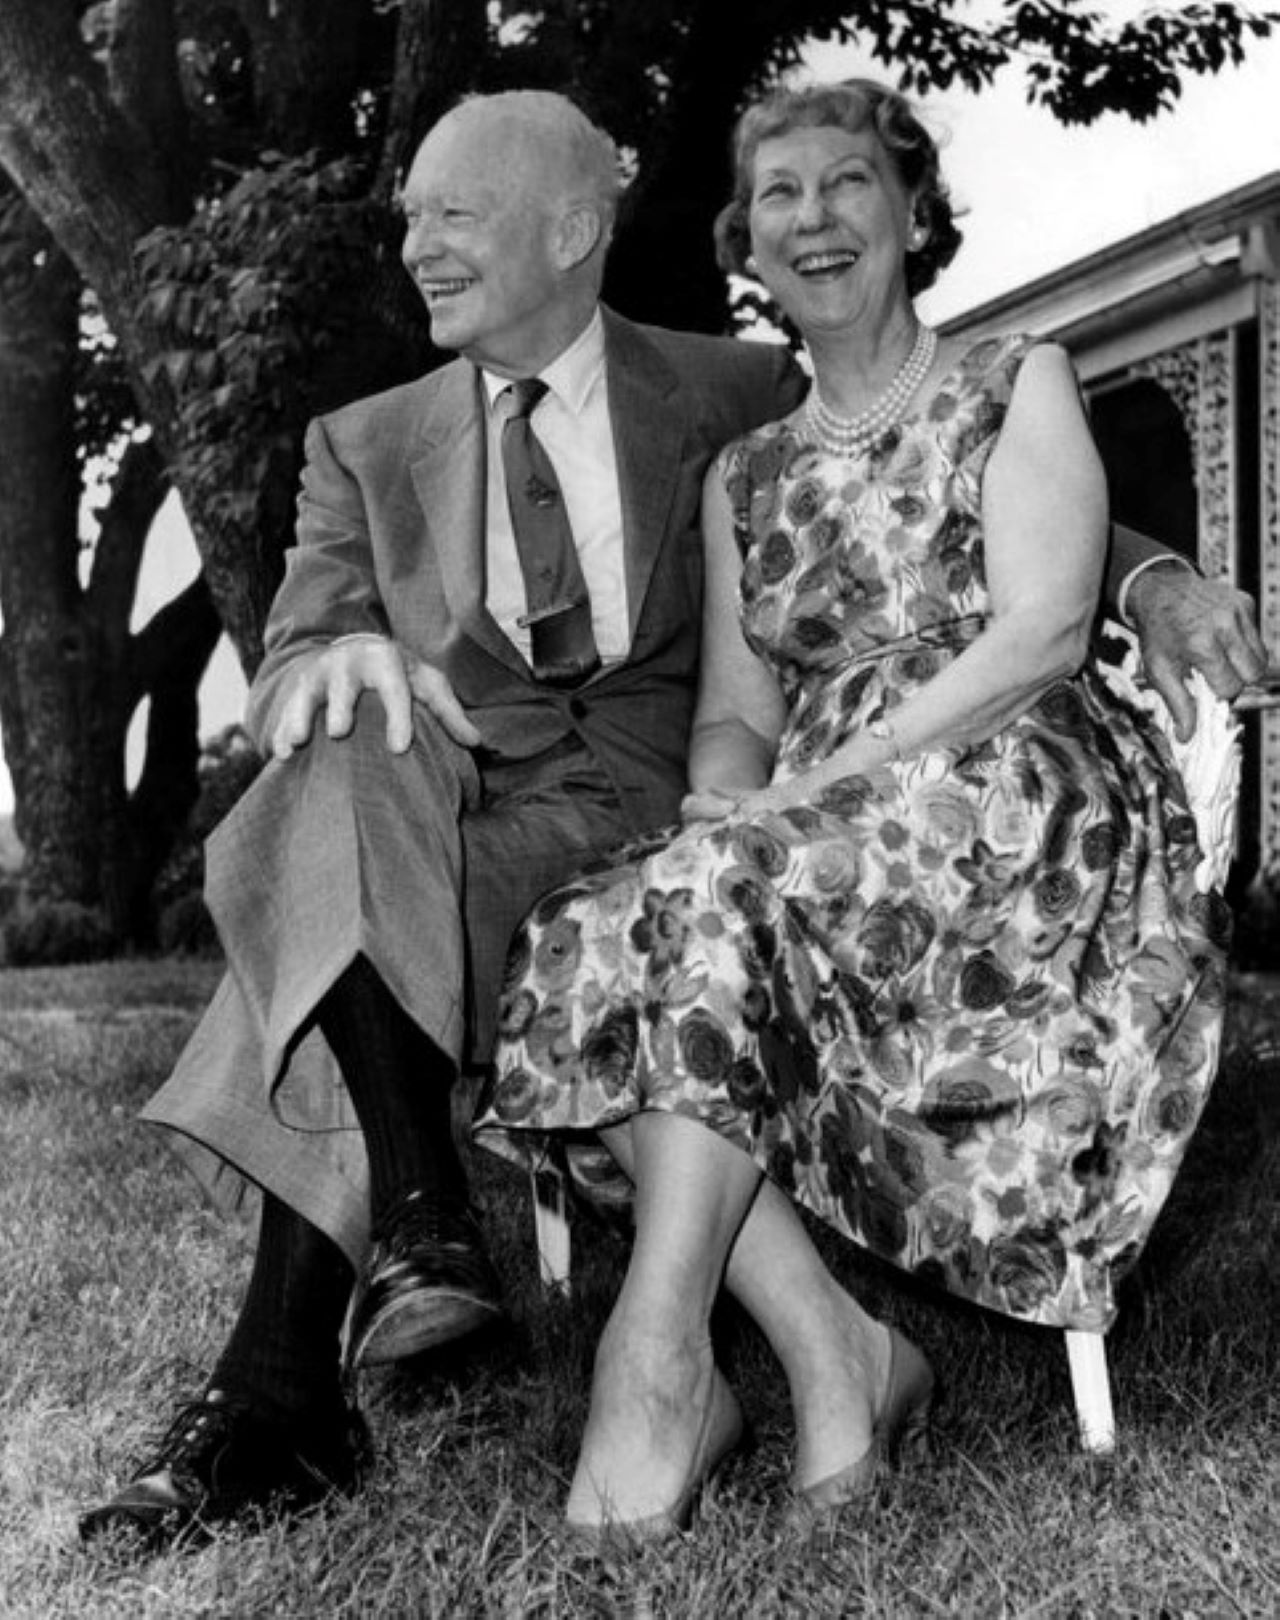 Mamie Eisenhower's former social secretary dies in Juno Beach at 106